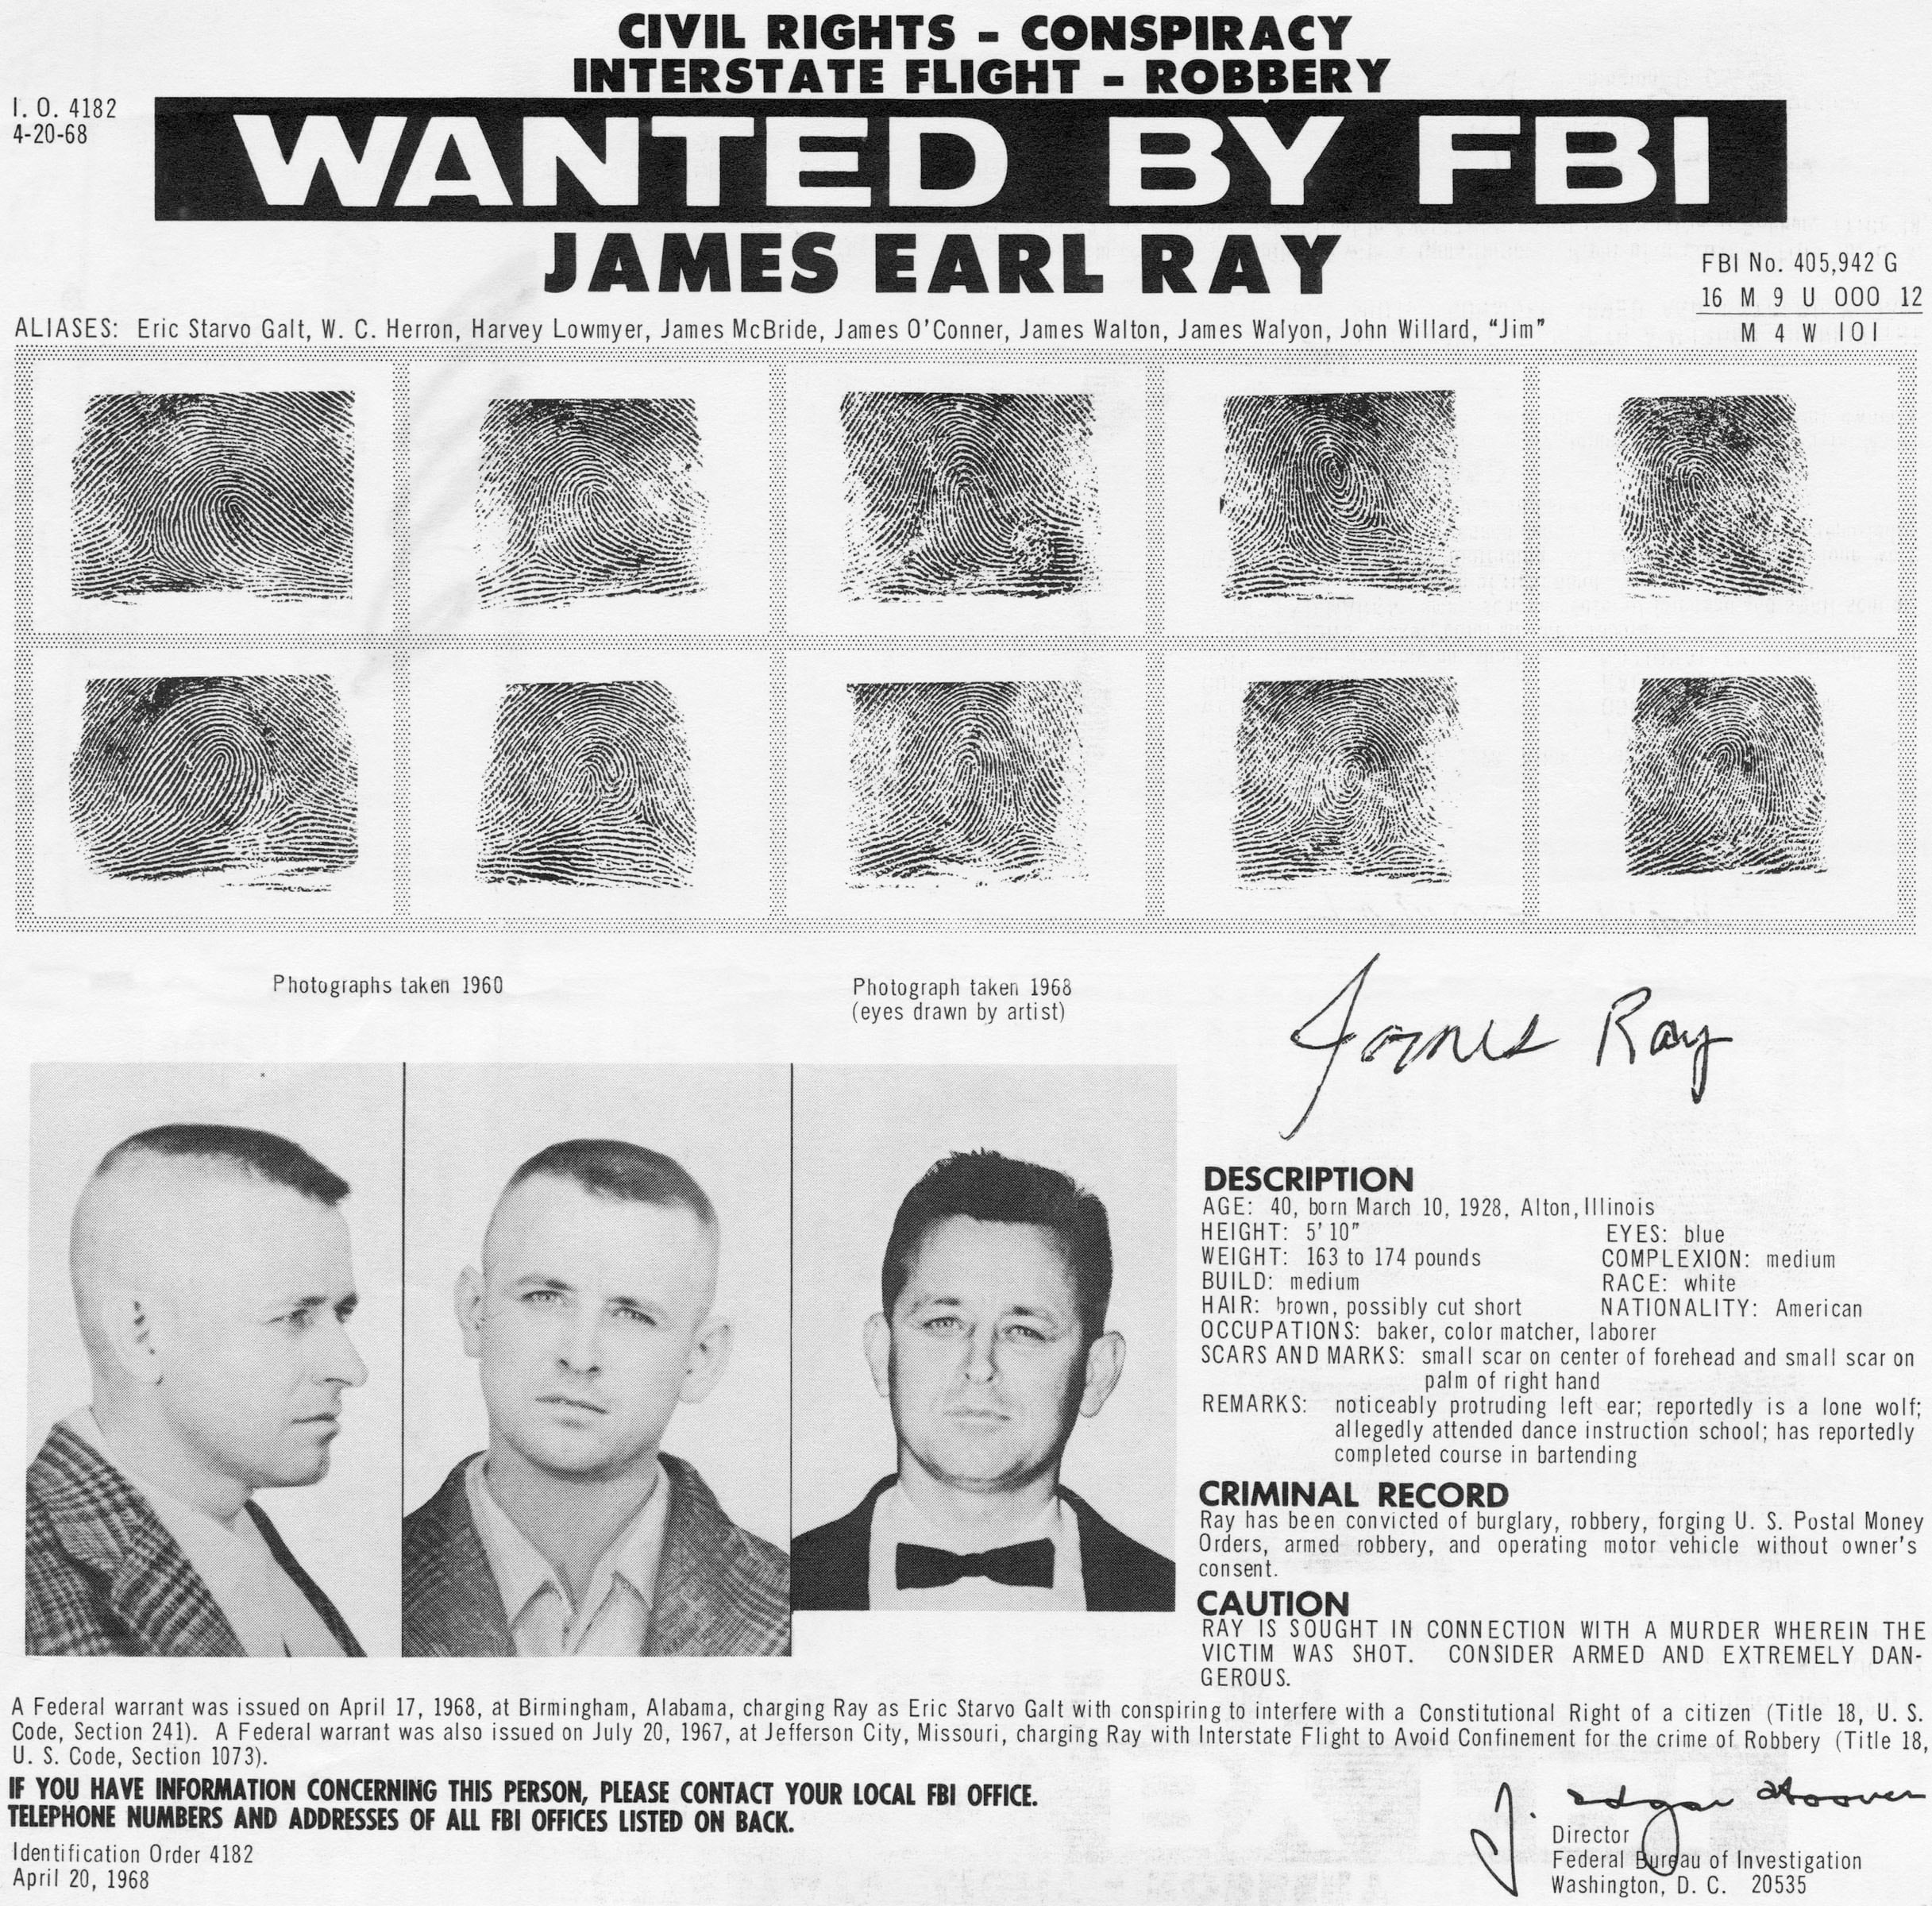 In seguito all’assassinio gli agenti federali ricercano James Earl Ray, fuggito subito dopo avere sparato il colpo di fucile